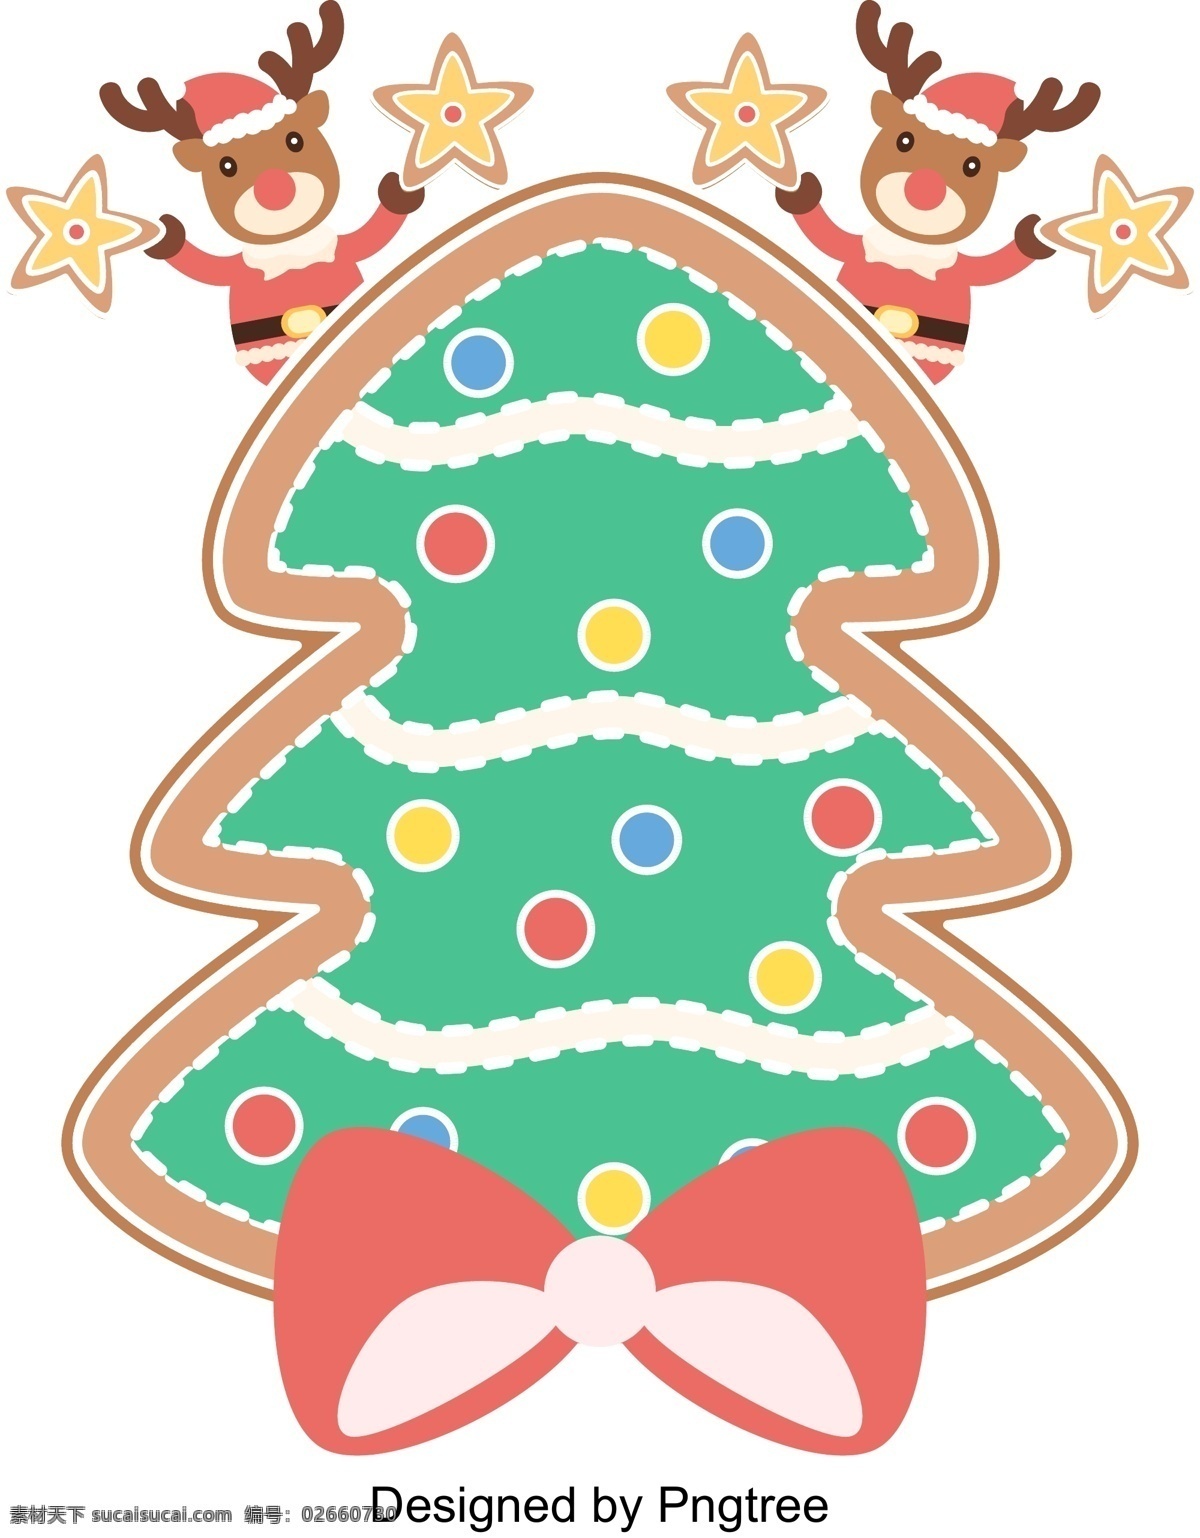 向量 压 扁 可爱 圣诞 麋鹿 圣诞节 减少 层级 圣诞老人 圣诞树 蝴蝶结 色 球 星星 姜饼